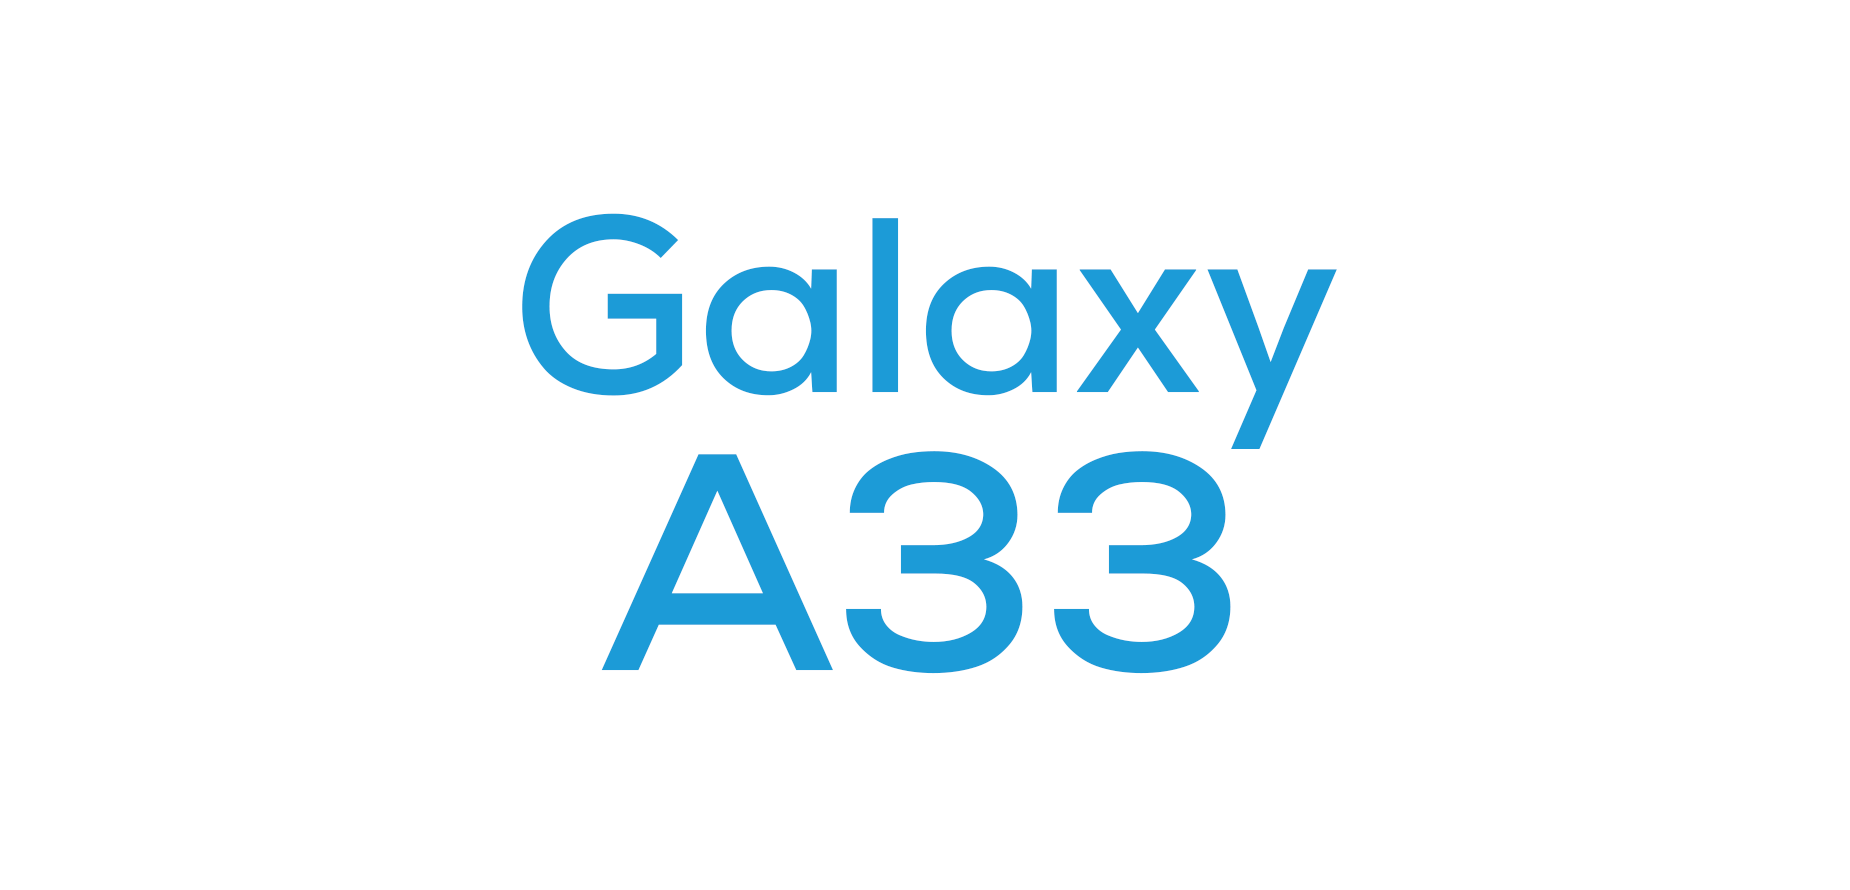 Galaxy A33 5G Cases